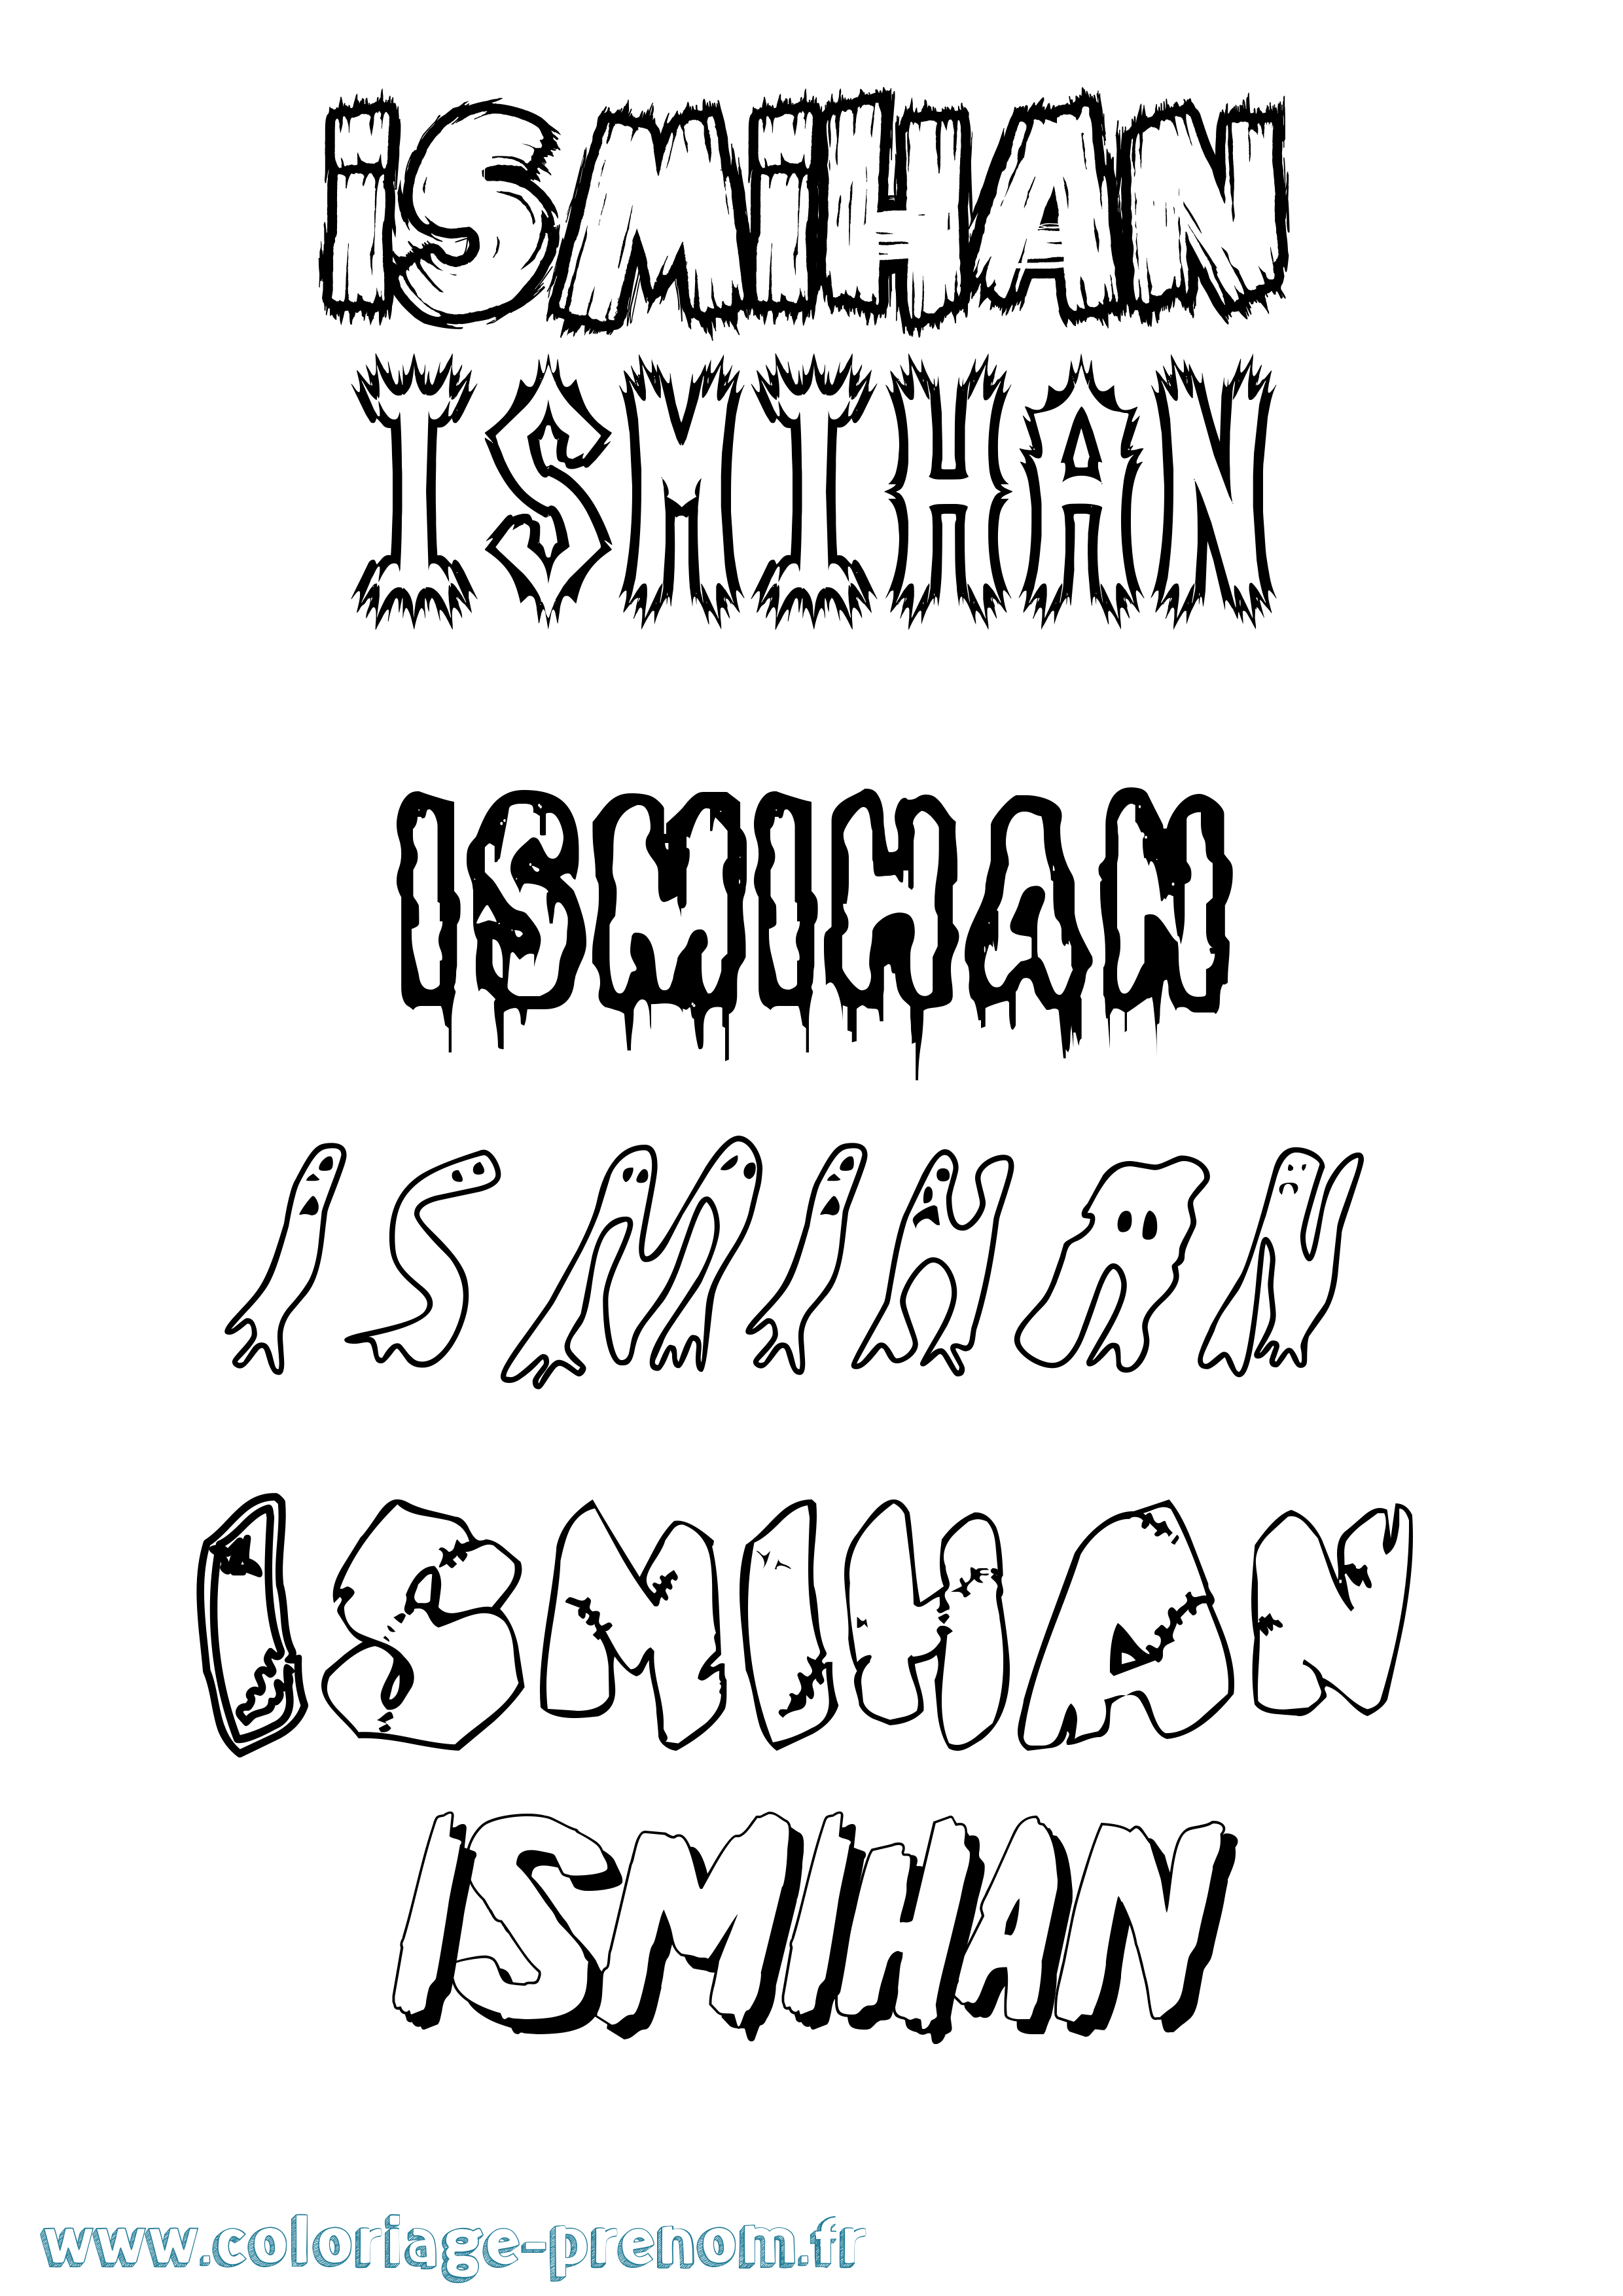 Coloriage prénom Ismihan Frisson